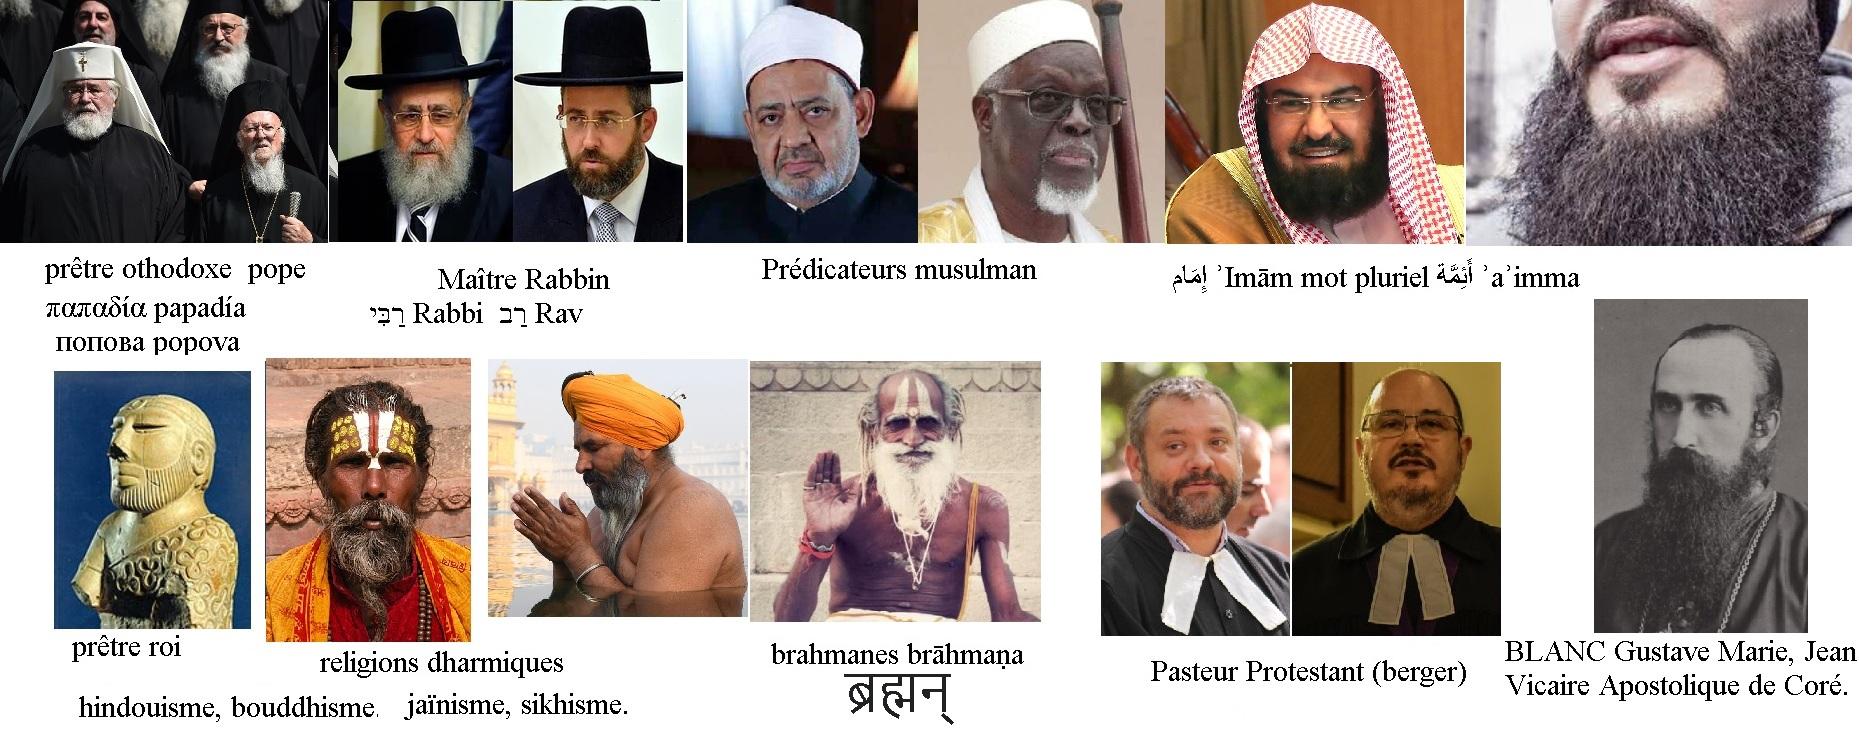 La barbe dans les religions